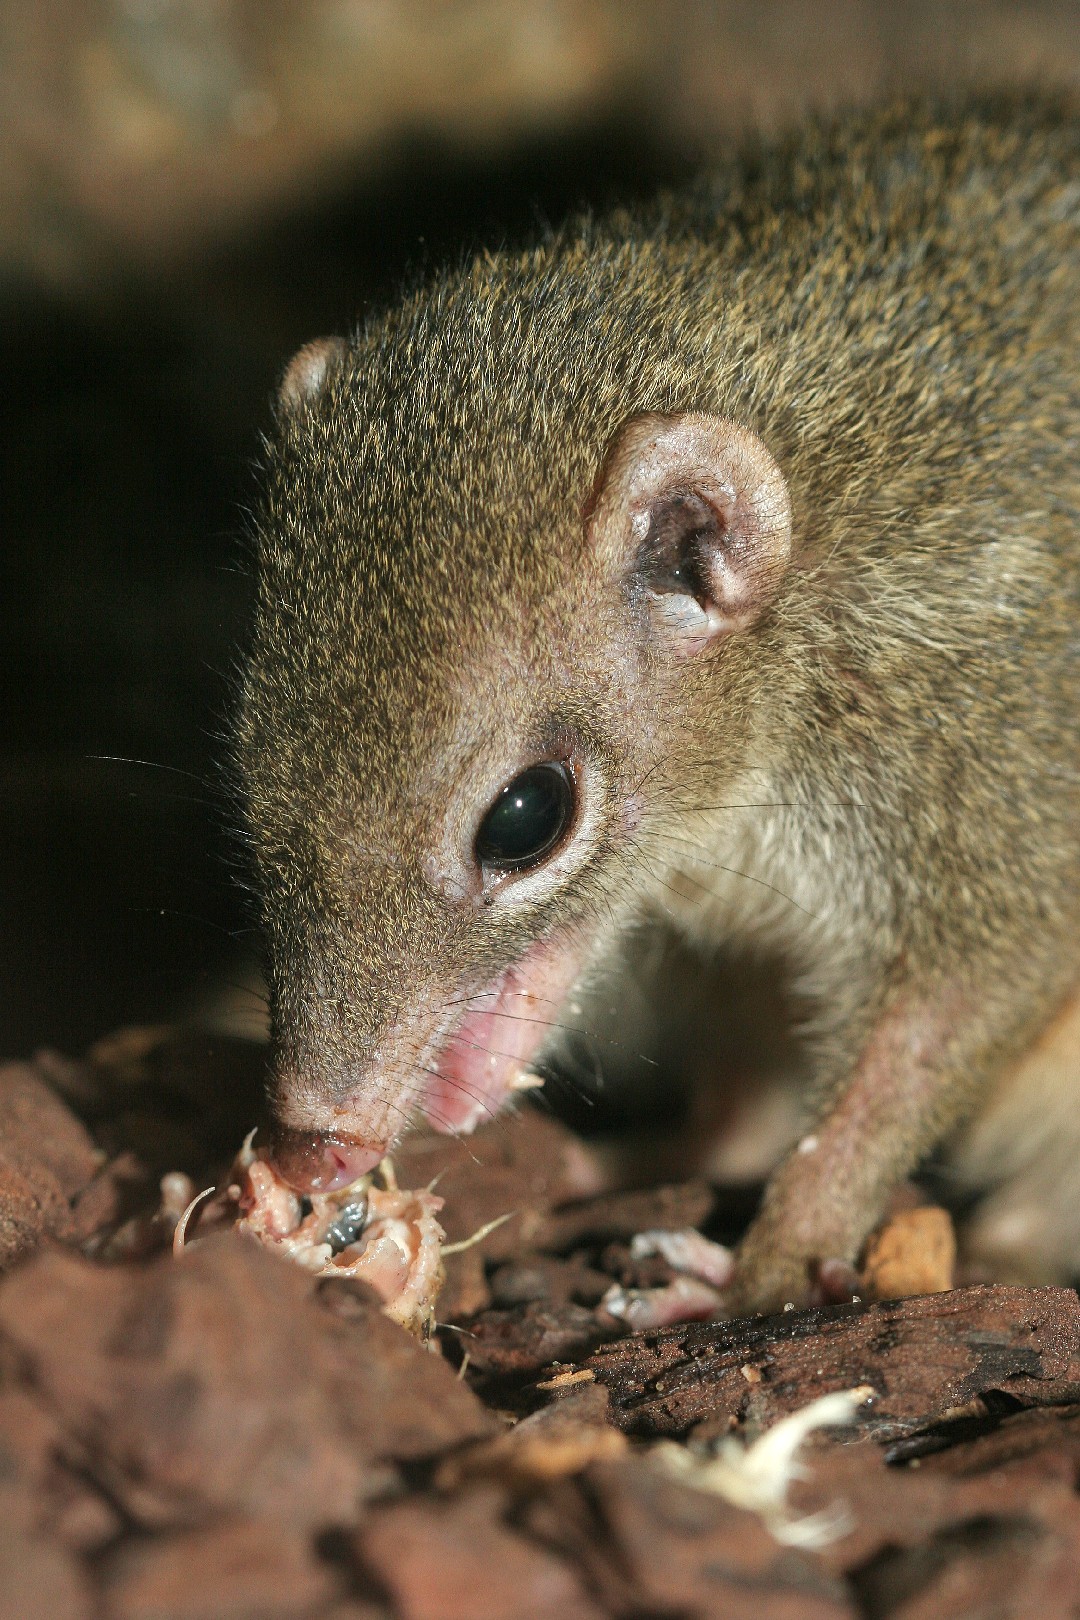 Gewöhnliches spitzhörnchen (Tupaia glis)